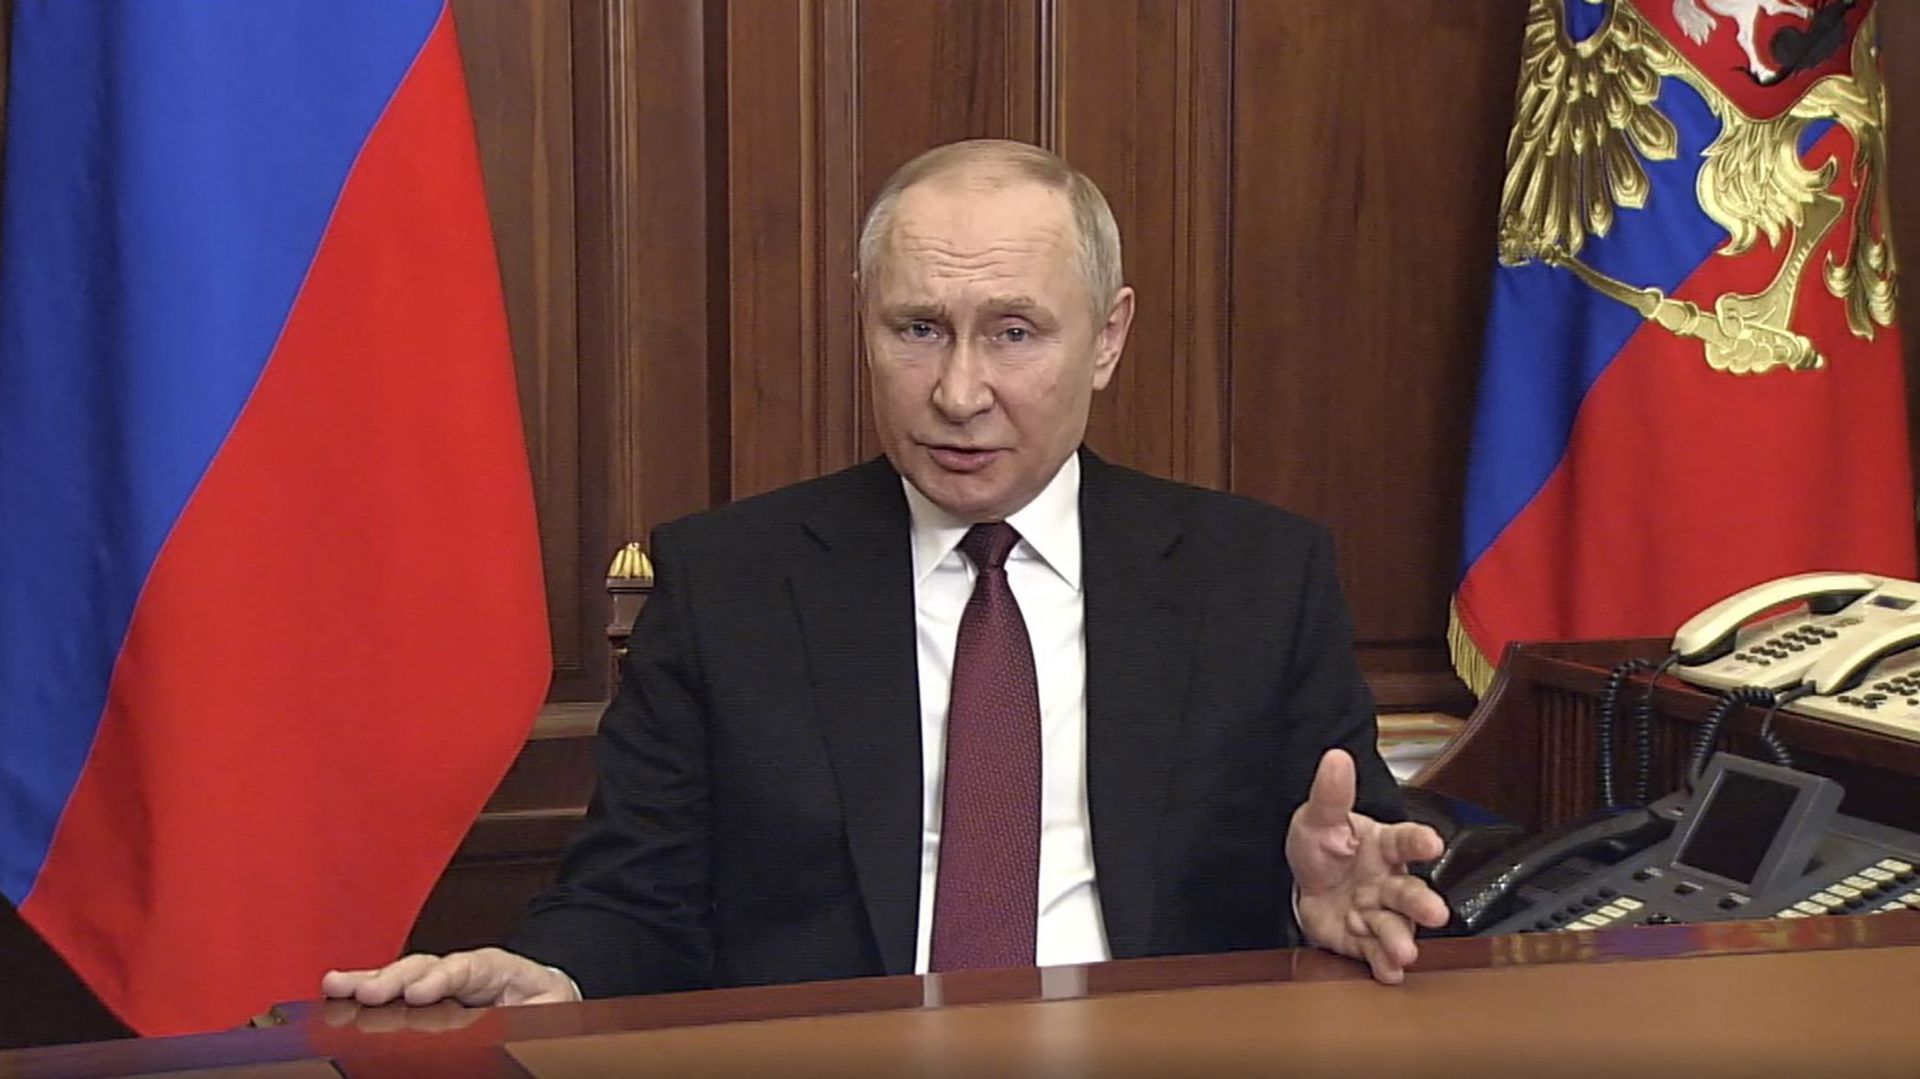 "Nous nous efforcerons d’arriver à une démilitarisation et une dénazification de l’Ukraine", a déclaré Poutine à la télévision russe.